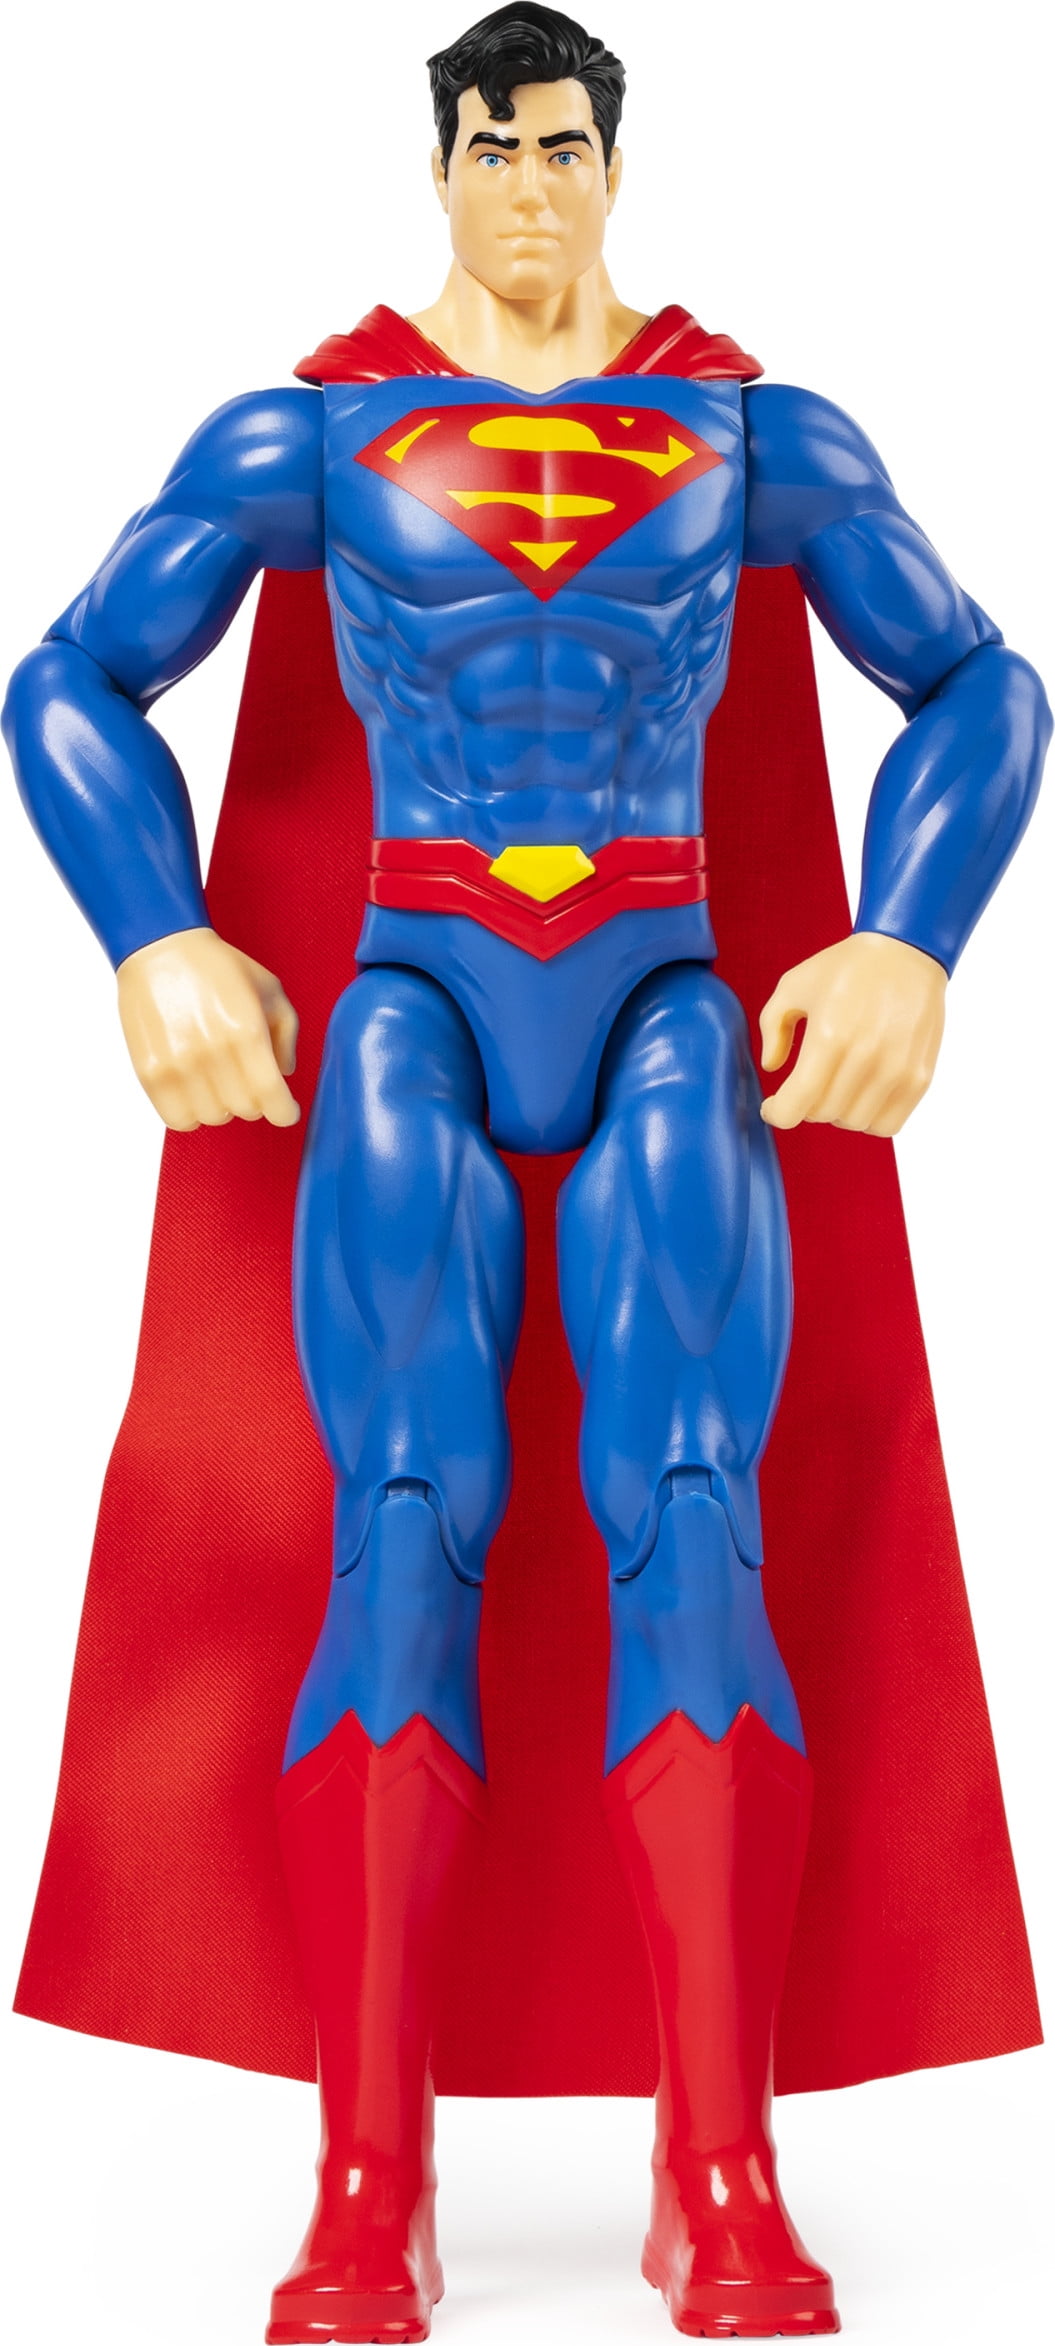 Mattel Superman Select Sculpture Metropolis Rising Action Figure for sale online 